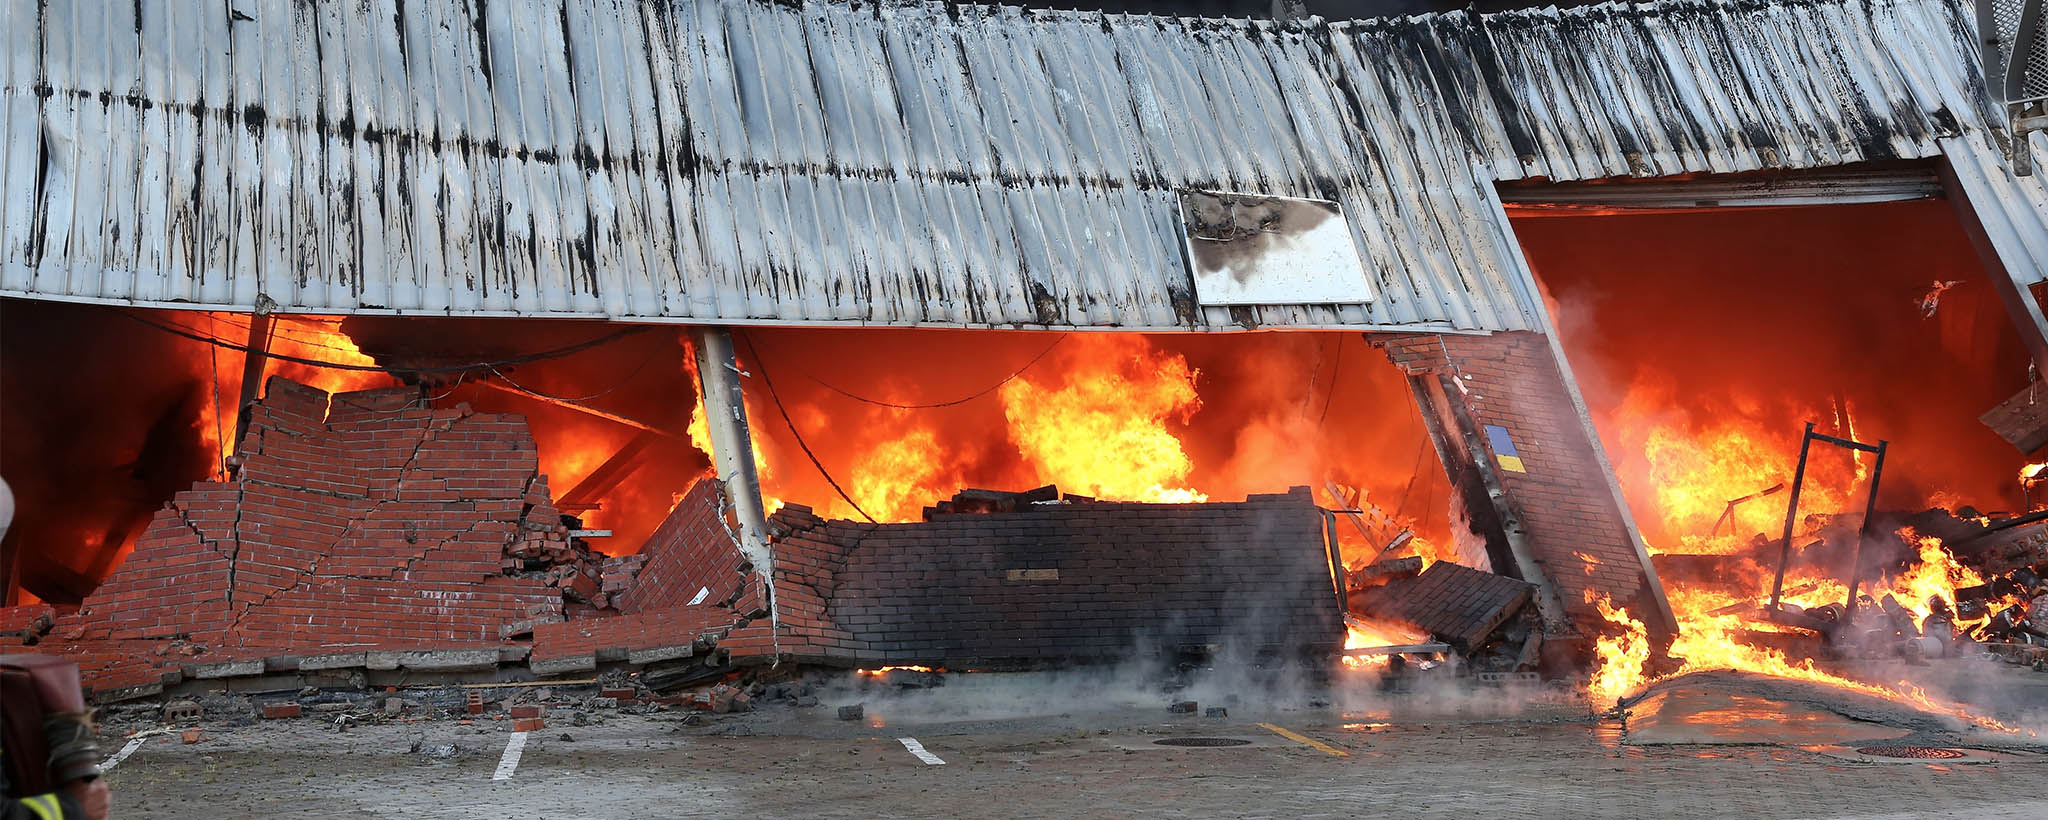 Un edificio de ladrillo se derrumba en llamas